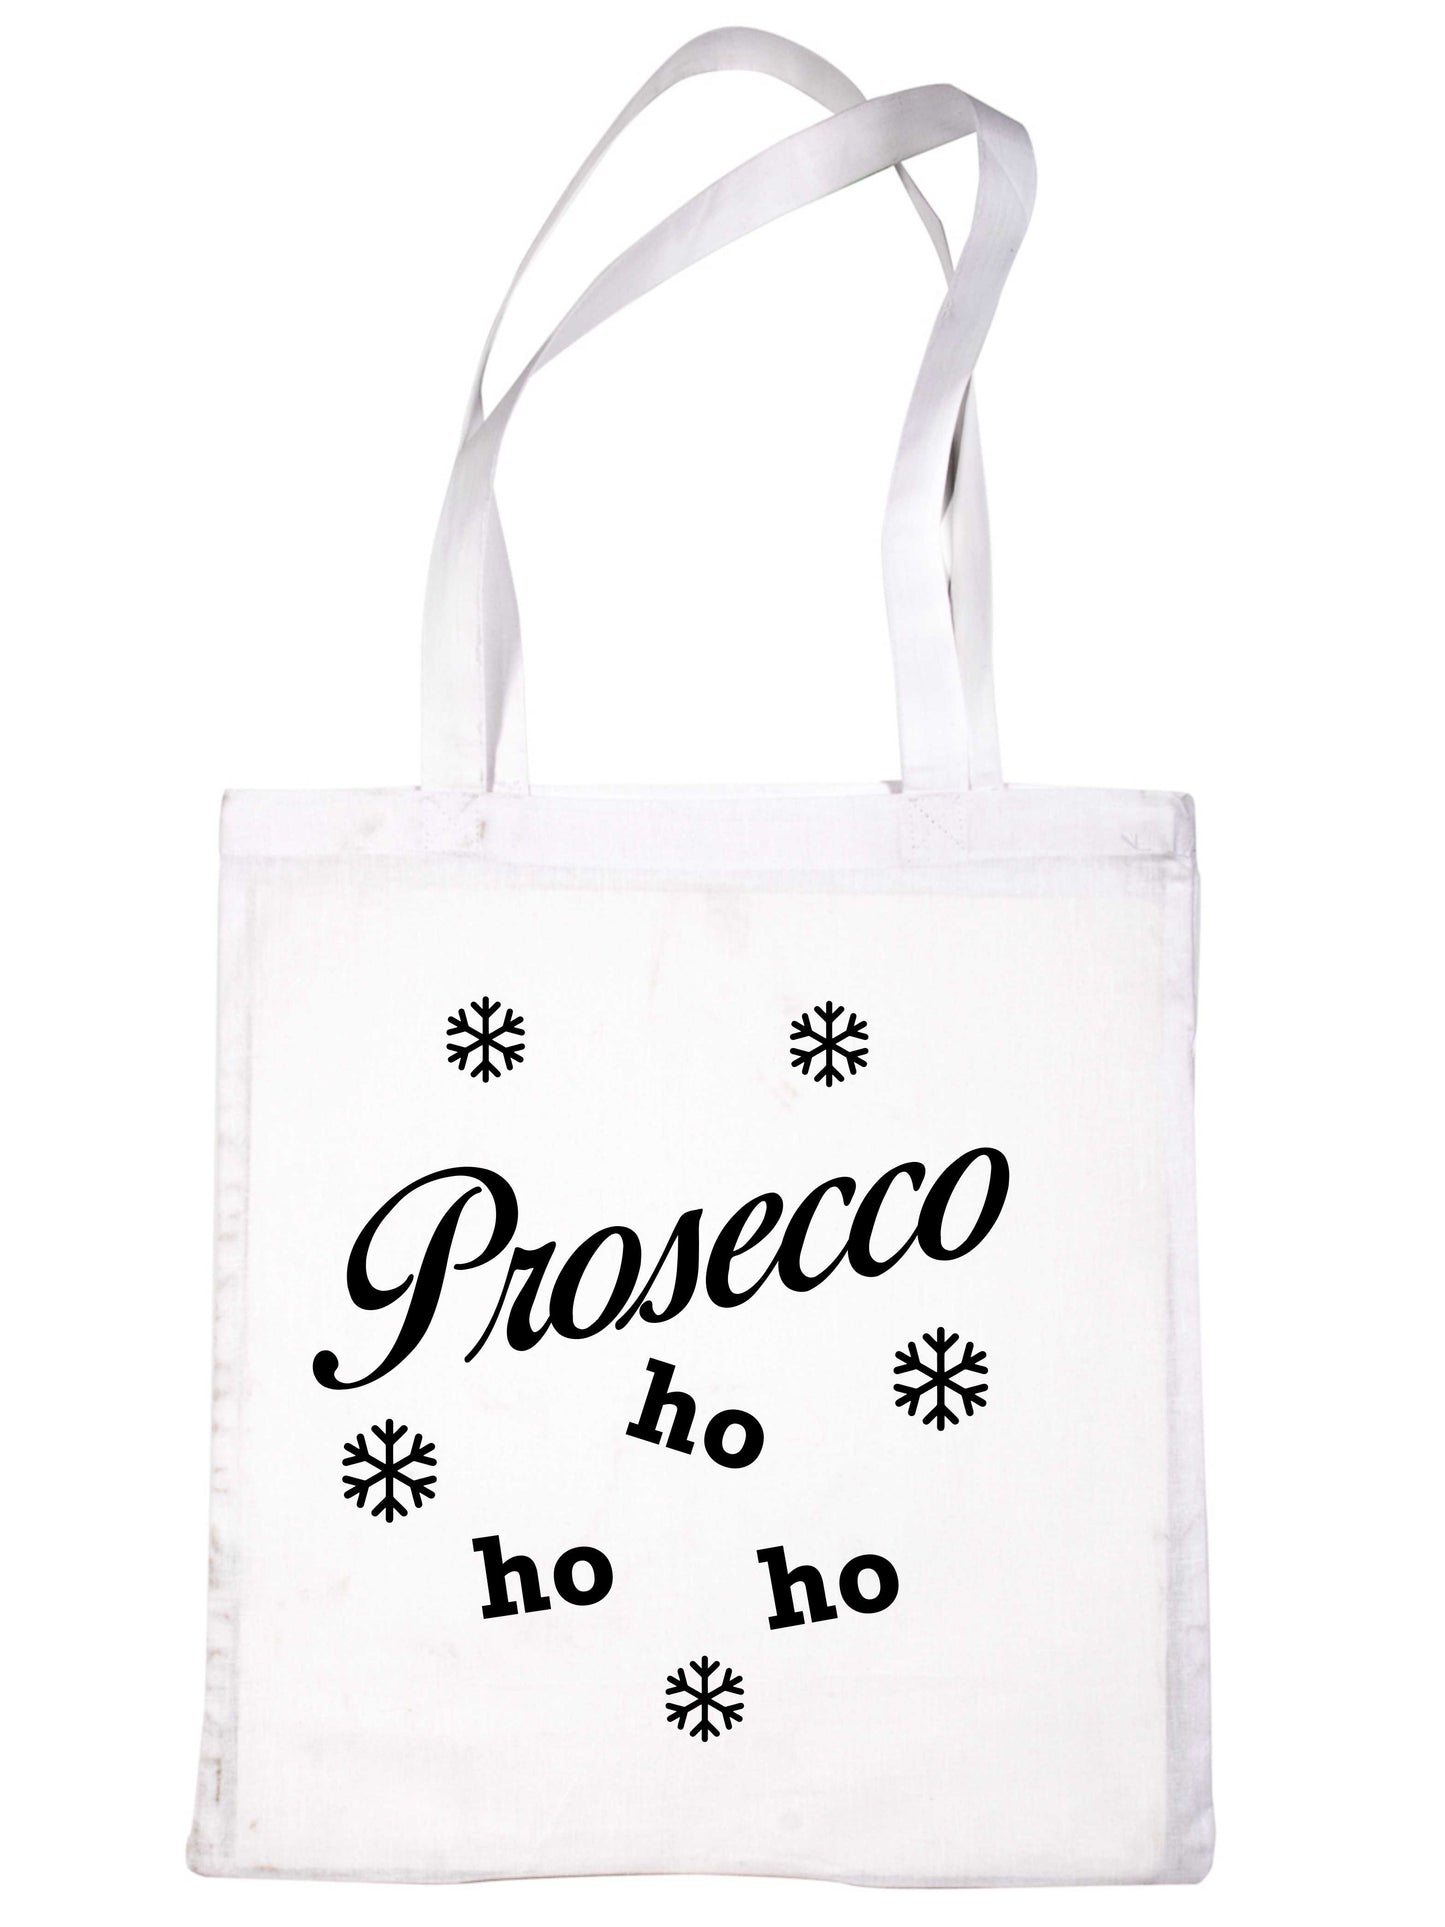 Prosecco Ho Ho Ho Christmas Gift Funny Slogan Shopping Tote Bag For Life